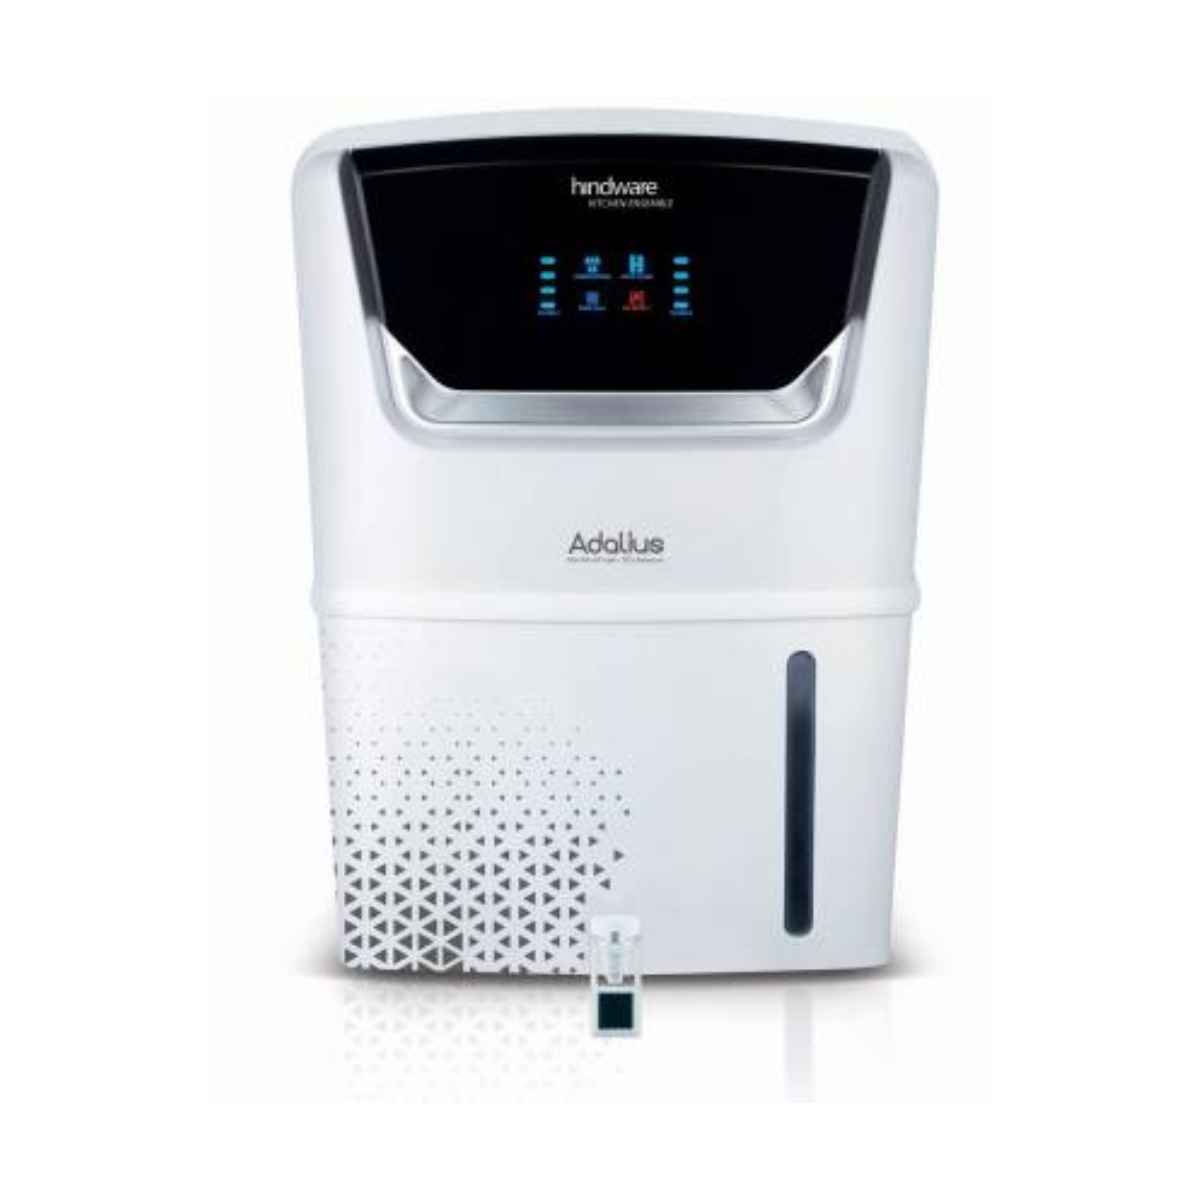 Hindware ADALIUS Advance 9 L RO+UV+UF+PH+TDS  Water Purifier